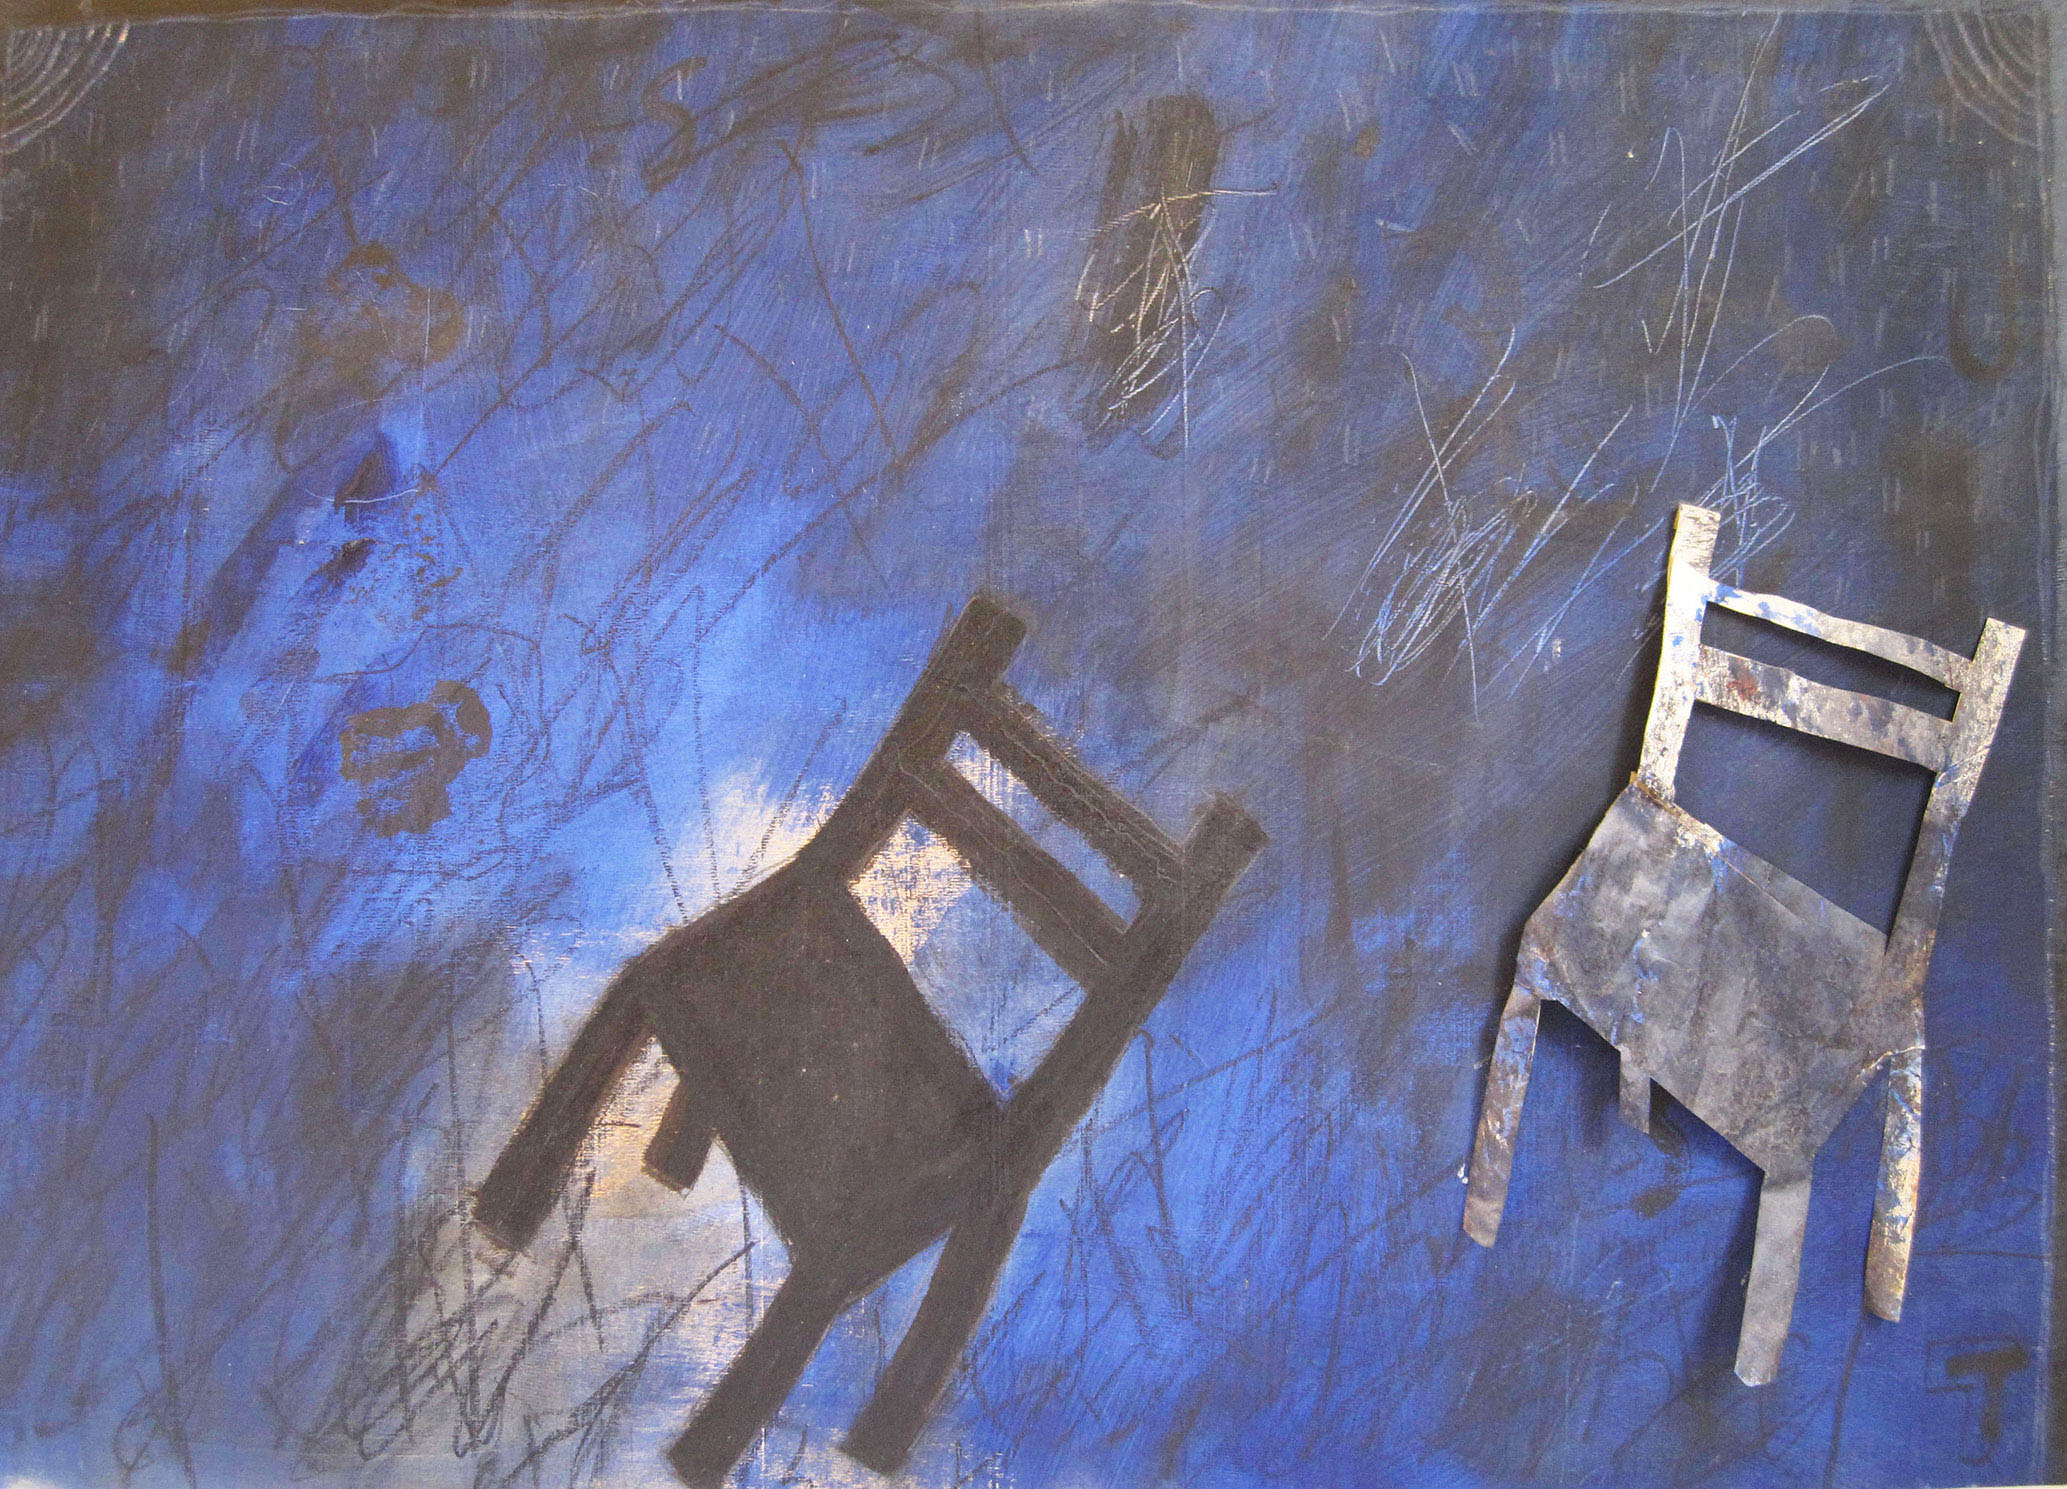 La sedia di Jürgen, Jürgens Stuhl, 2017 - olio e collage su tavola, cm 57,5x82